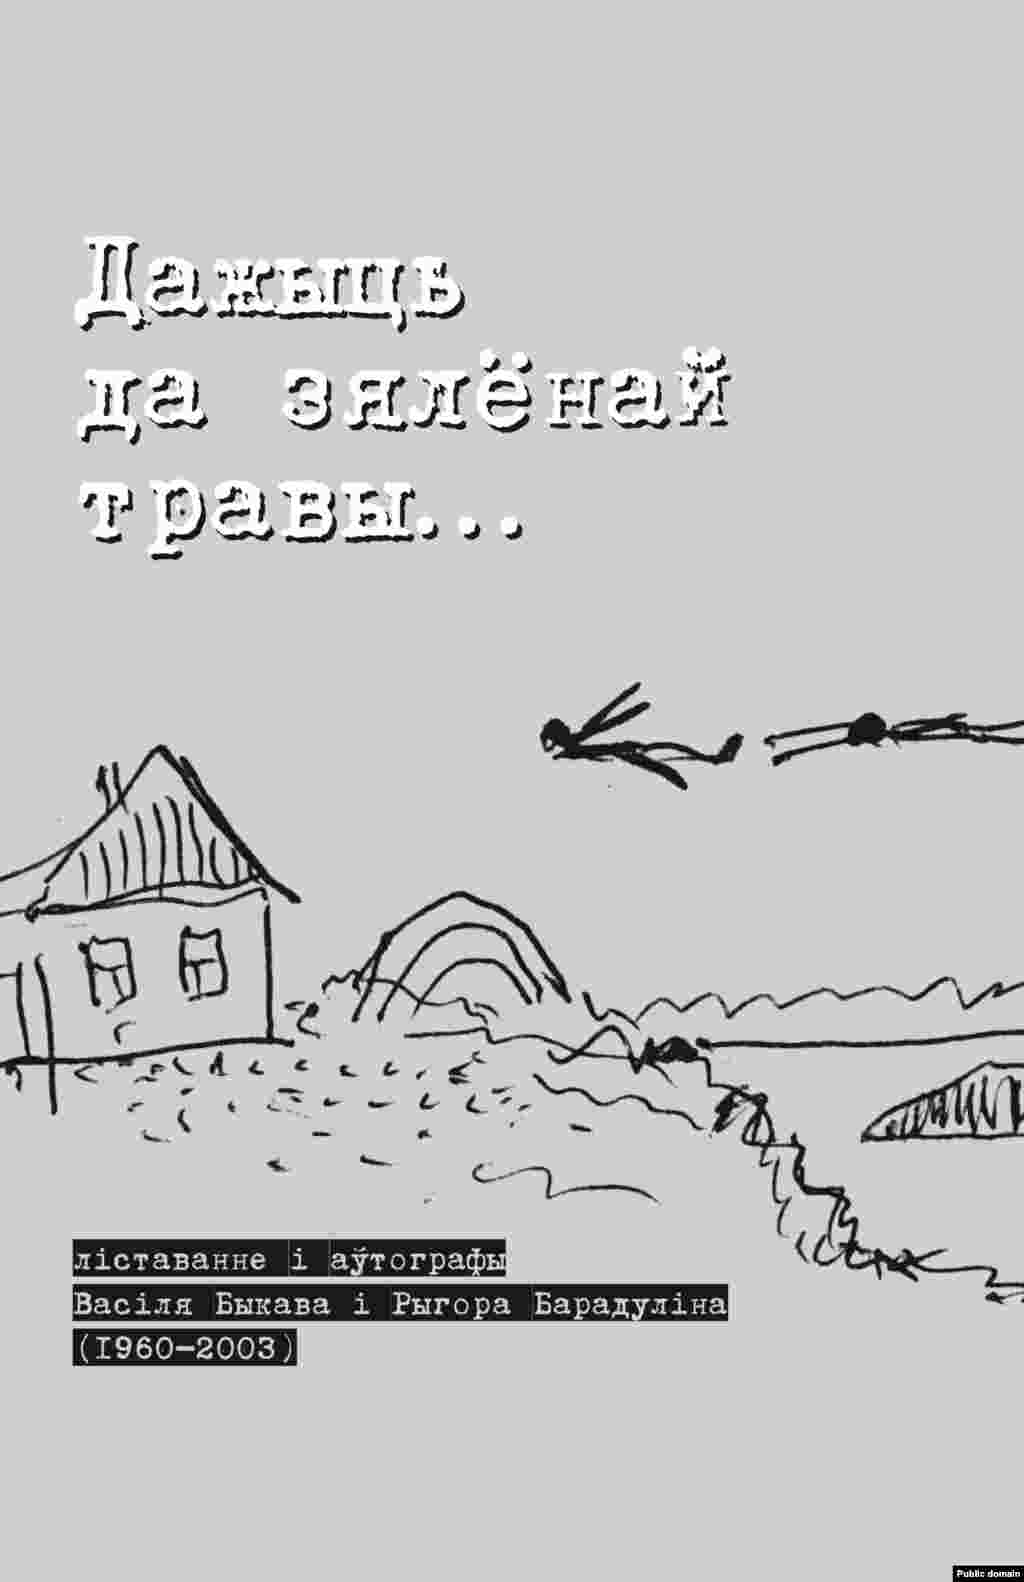 Belarus - correspondence of Ryhor Baradulin with Vasil Bykau, book cover, 14Jun2008 - Вокладка кнігі Барадуліна "Дажыць да зялёнай травы". 2008.